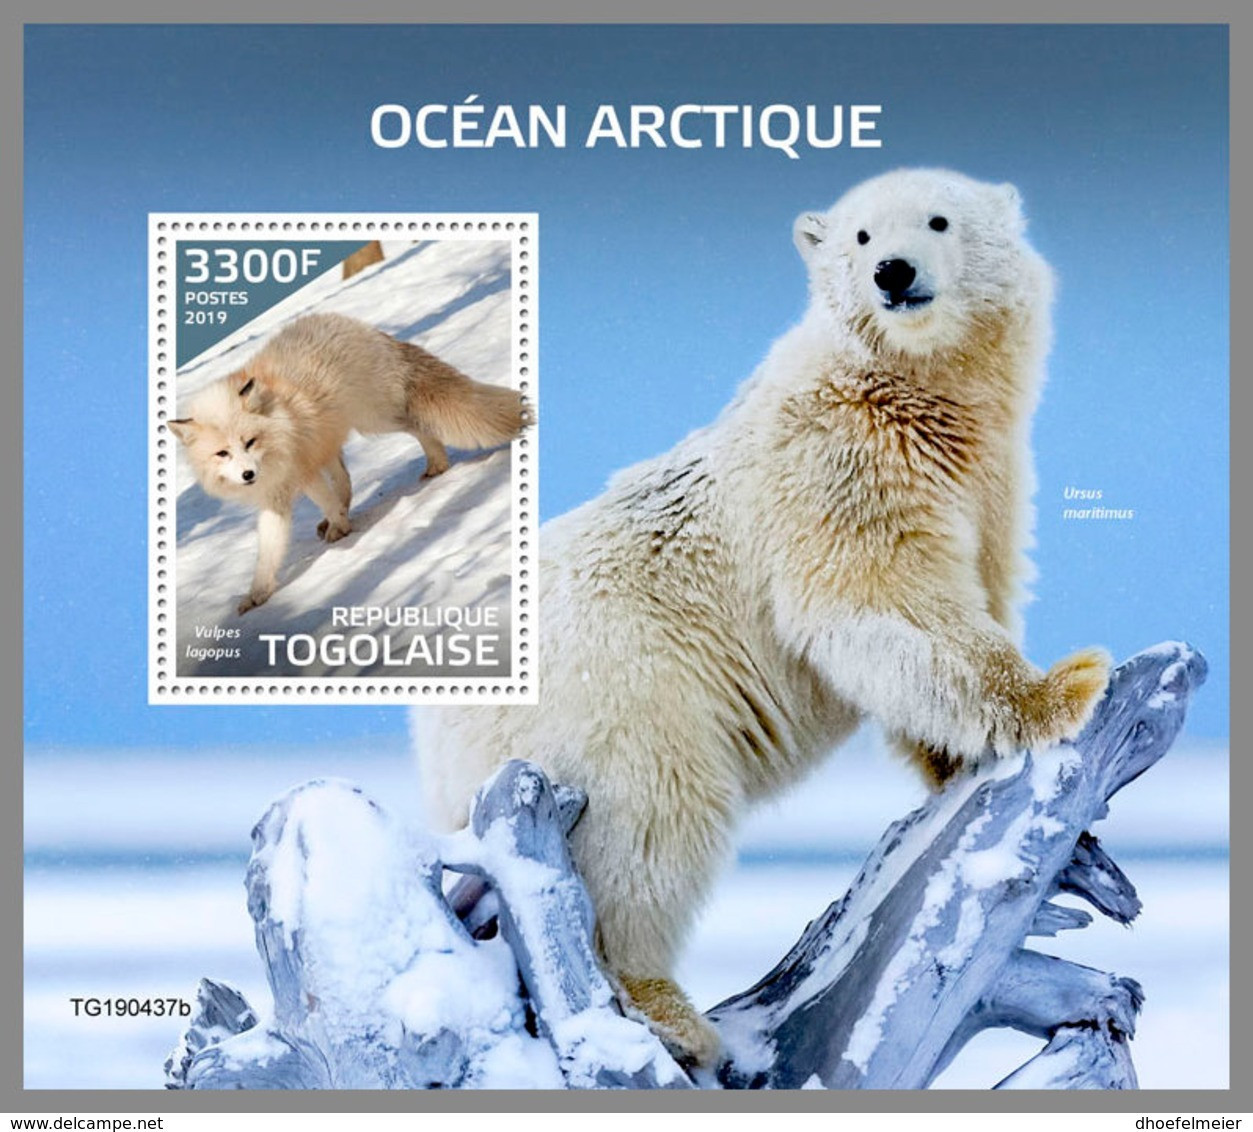 TOGO 2019 MNH Arctic Oceans Arktische Tierwelt Ocean Arctique S/S - OFFICIAL ISSUE - DH1946 - Arctic Tierwelt